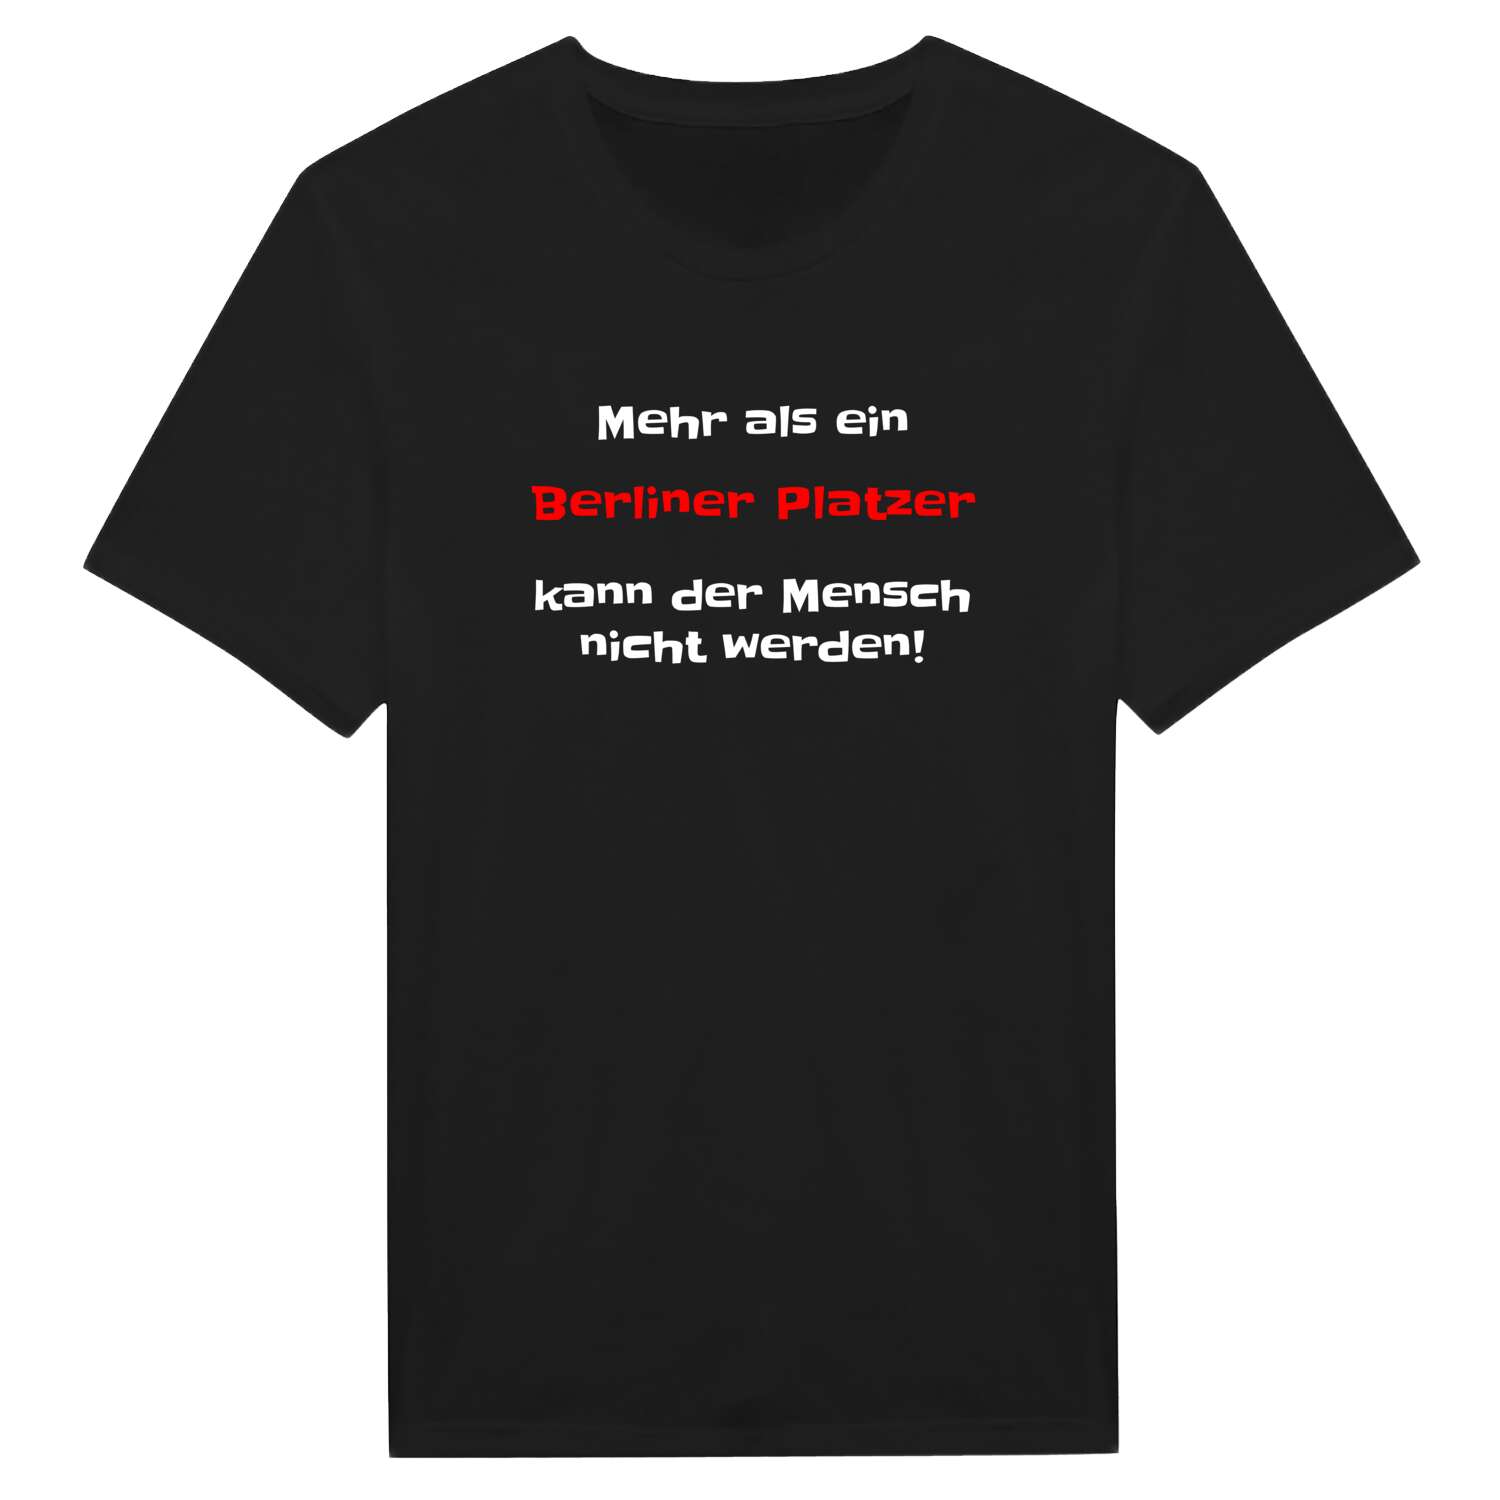 Berliner Platz T-Shirt »Mehr als ein«